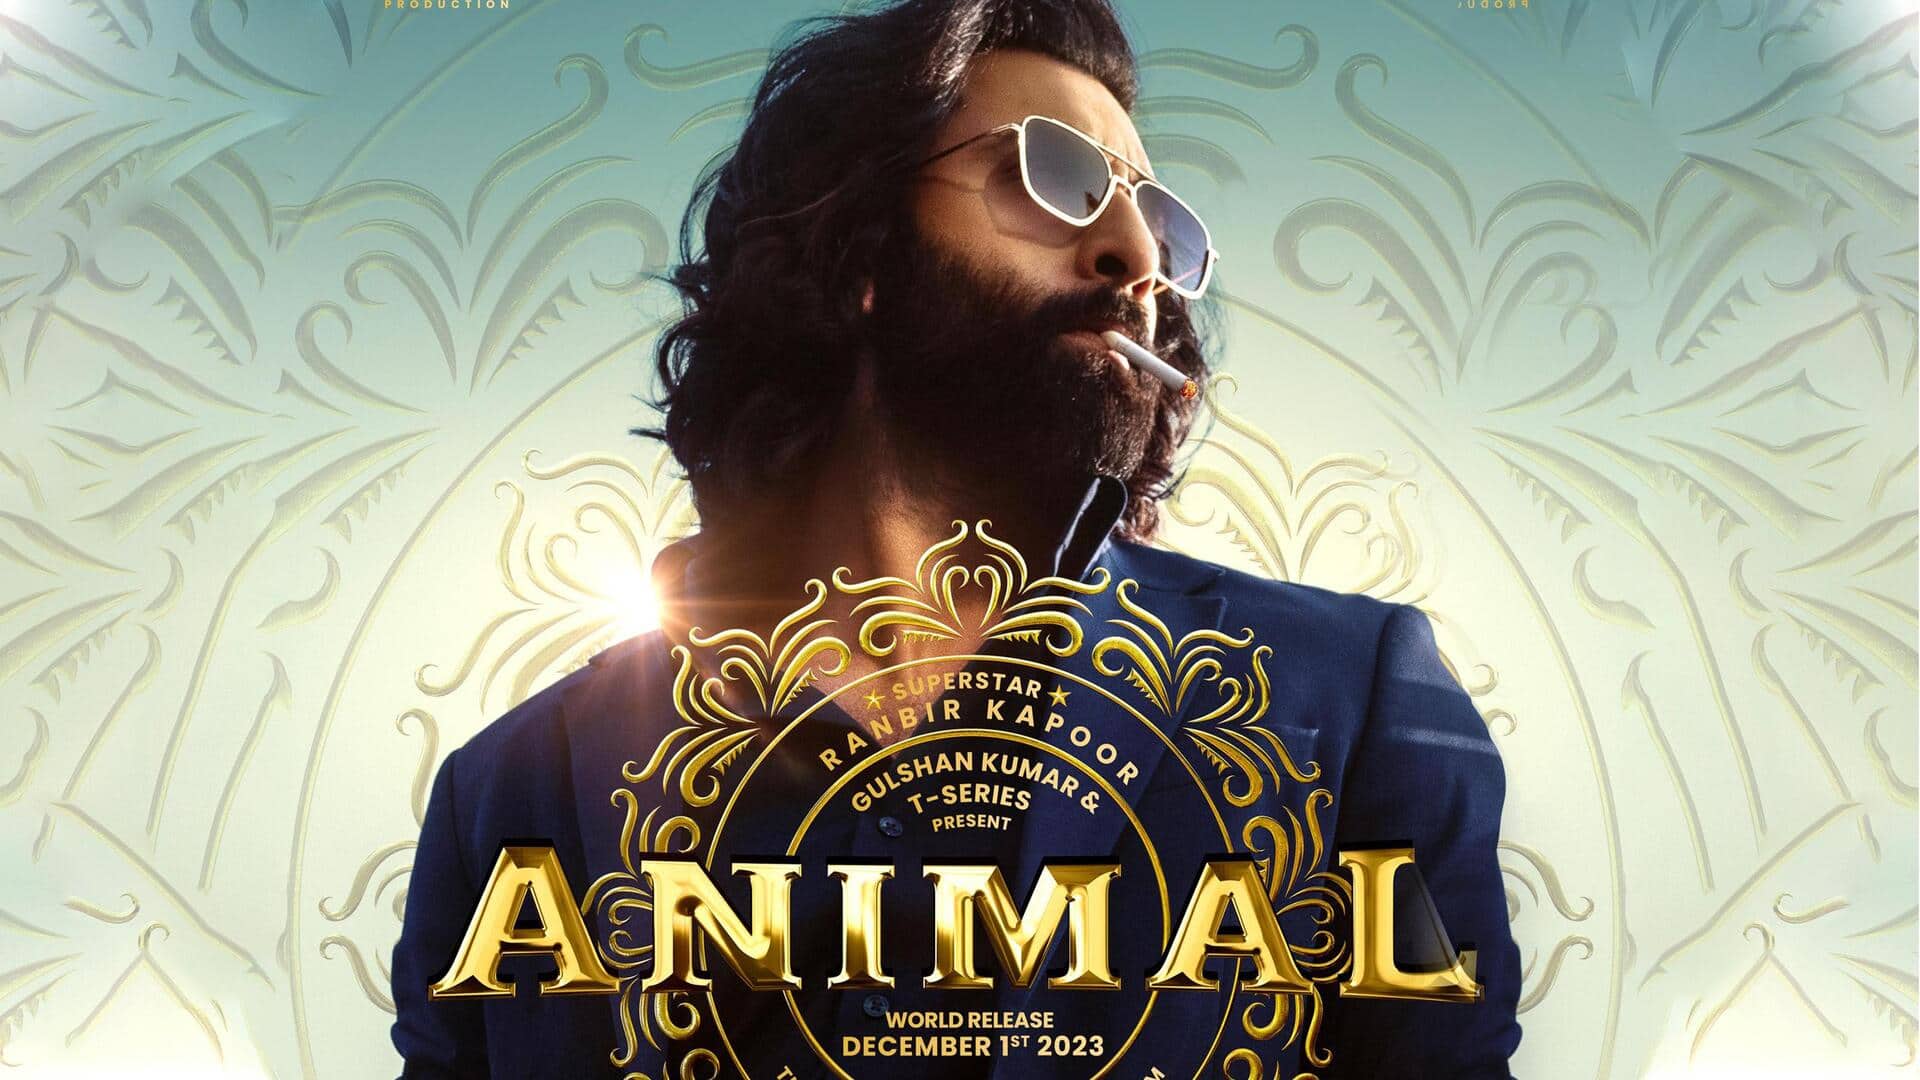 Animal Trailer : 'యానిమల్' ట్రైలర్ వచ్చేసింది.. ఊచకోత కోస్తున్న రణబీర్  